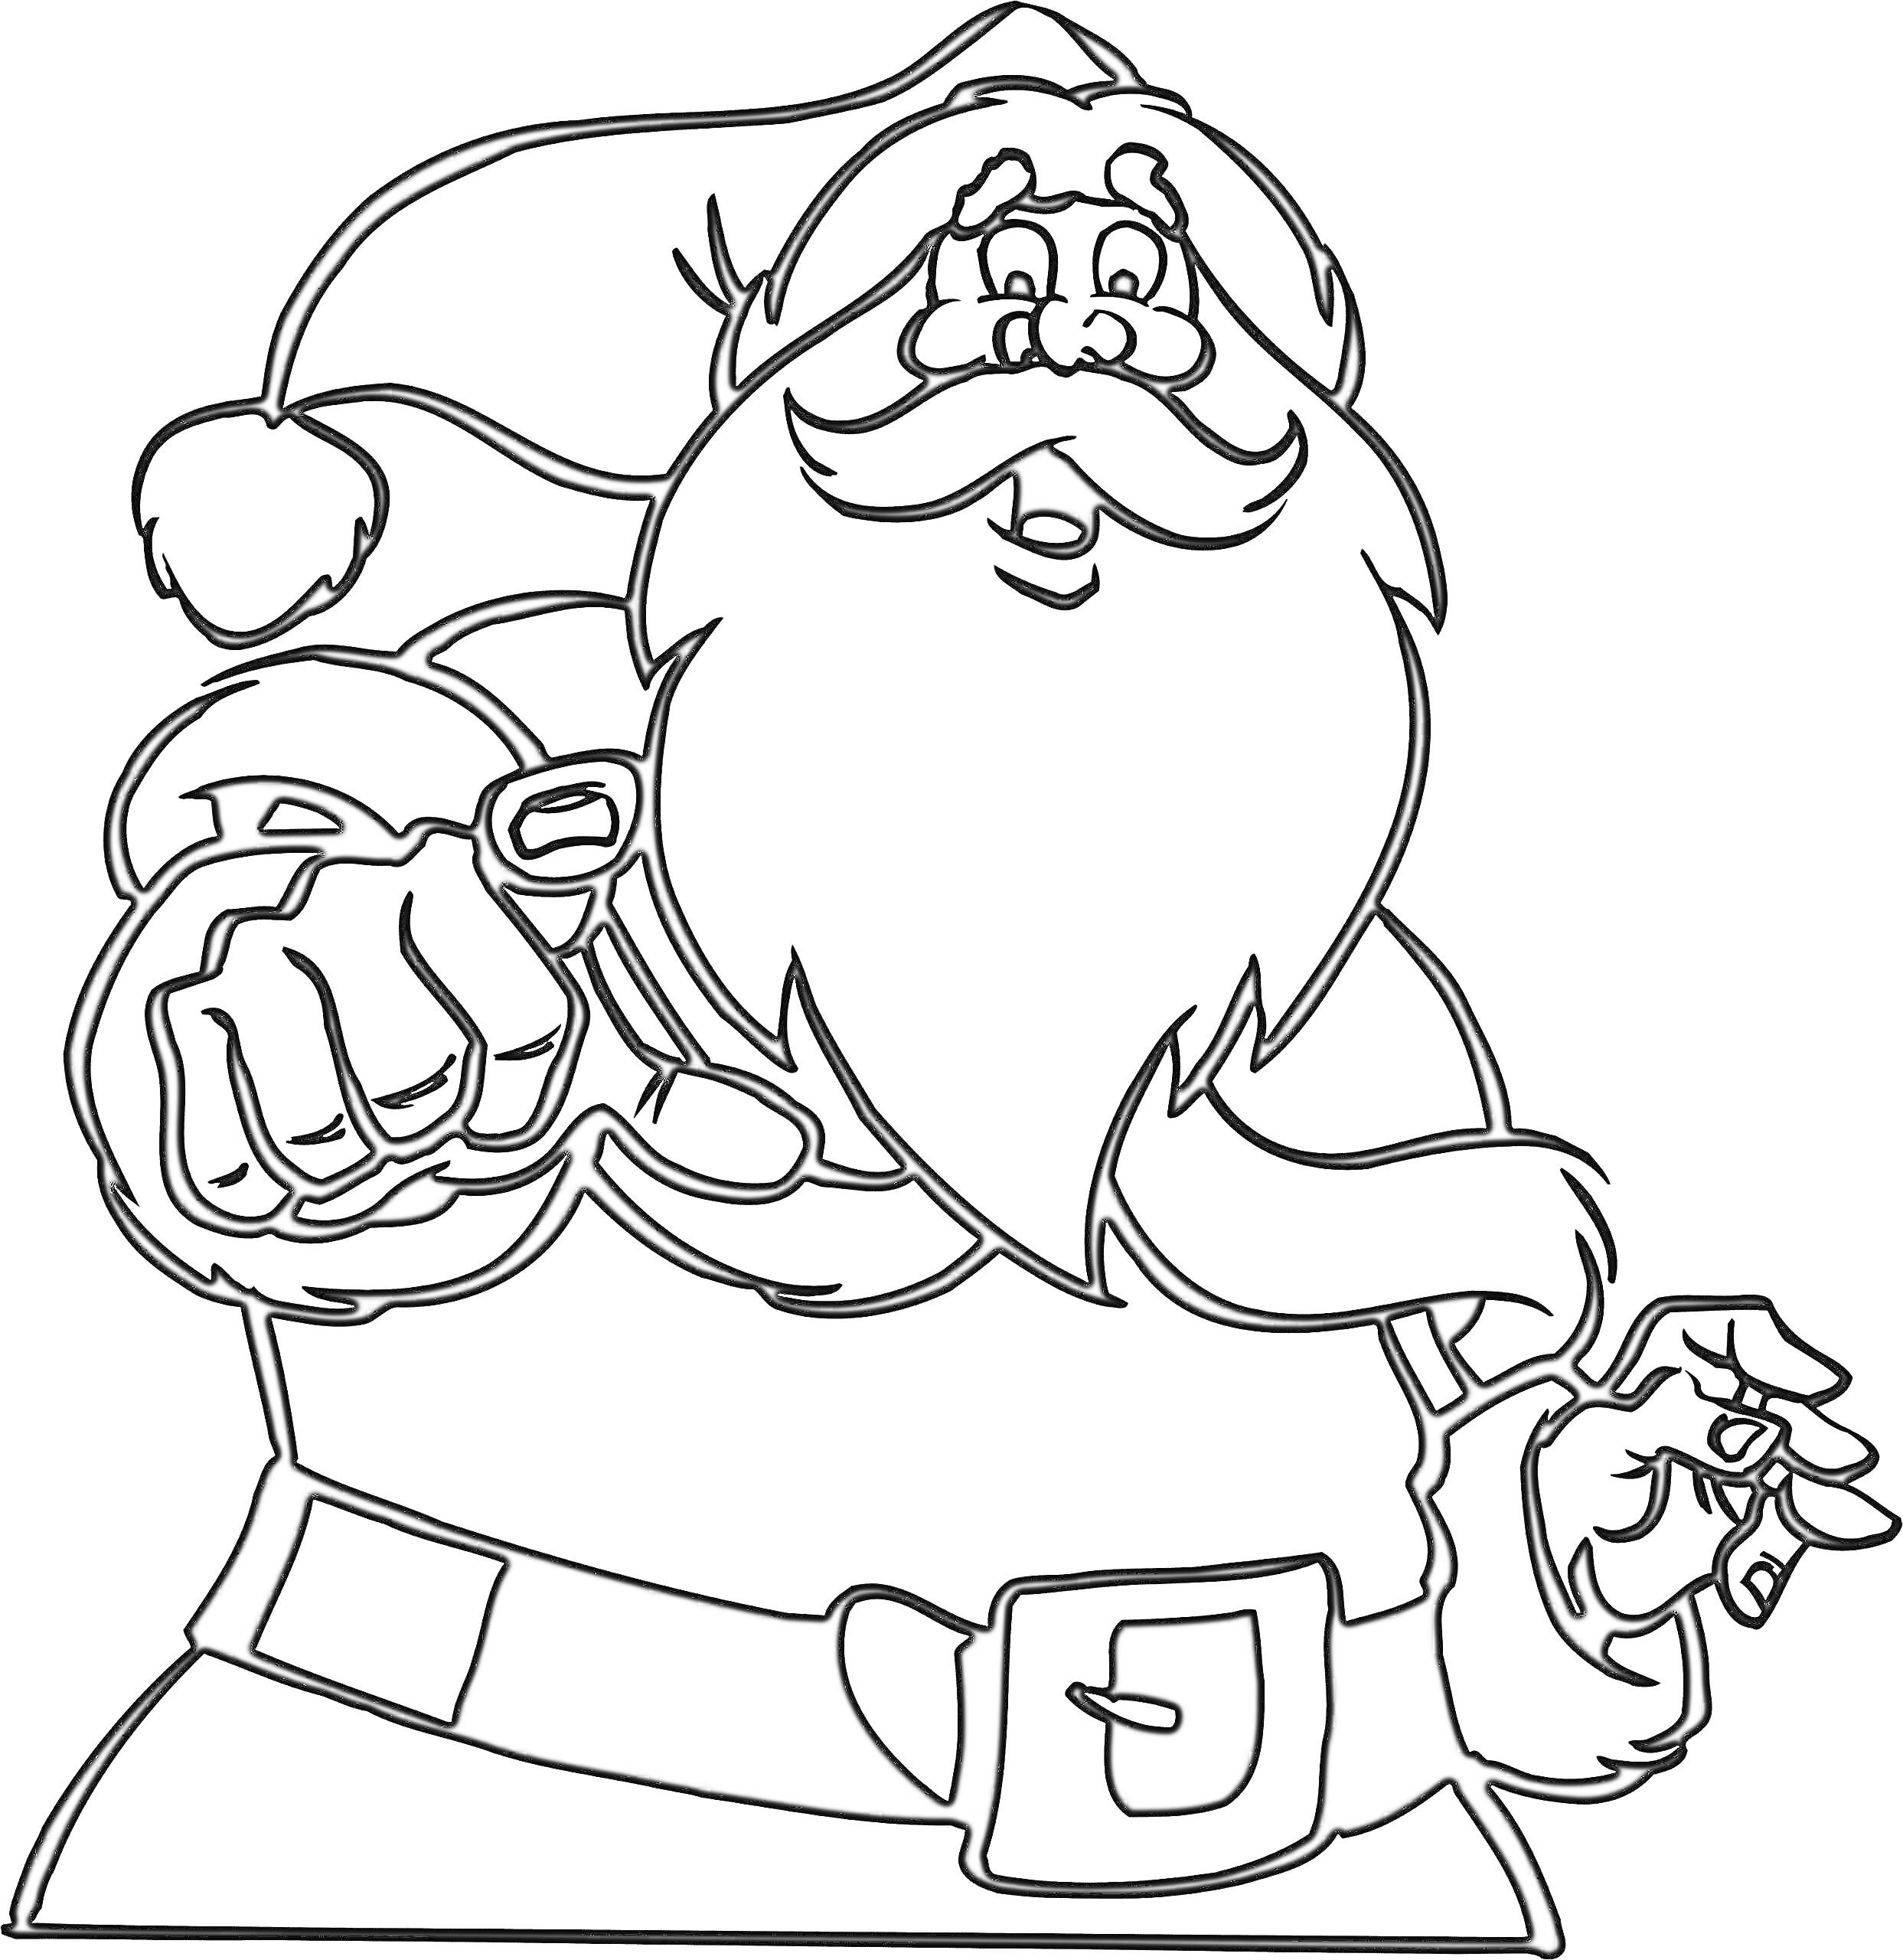 Санта Клаус в шапке, с бородой, ремнем и рукавицами, указывающий пальцем вперед